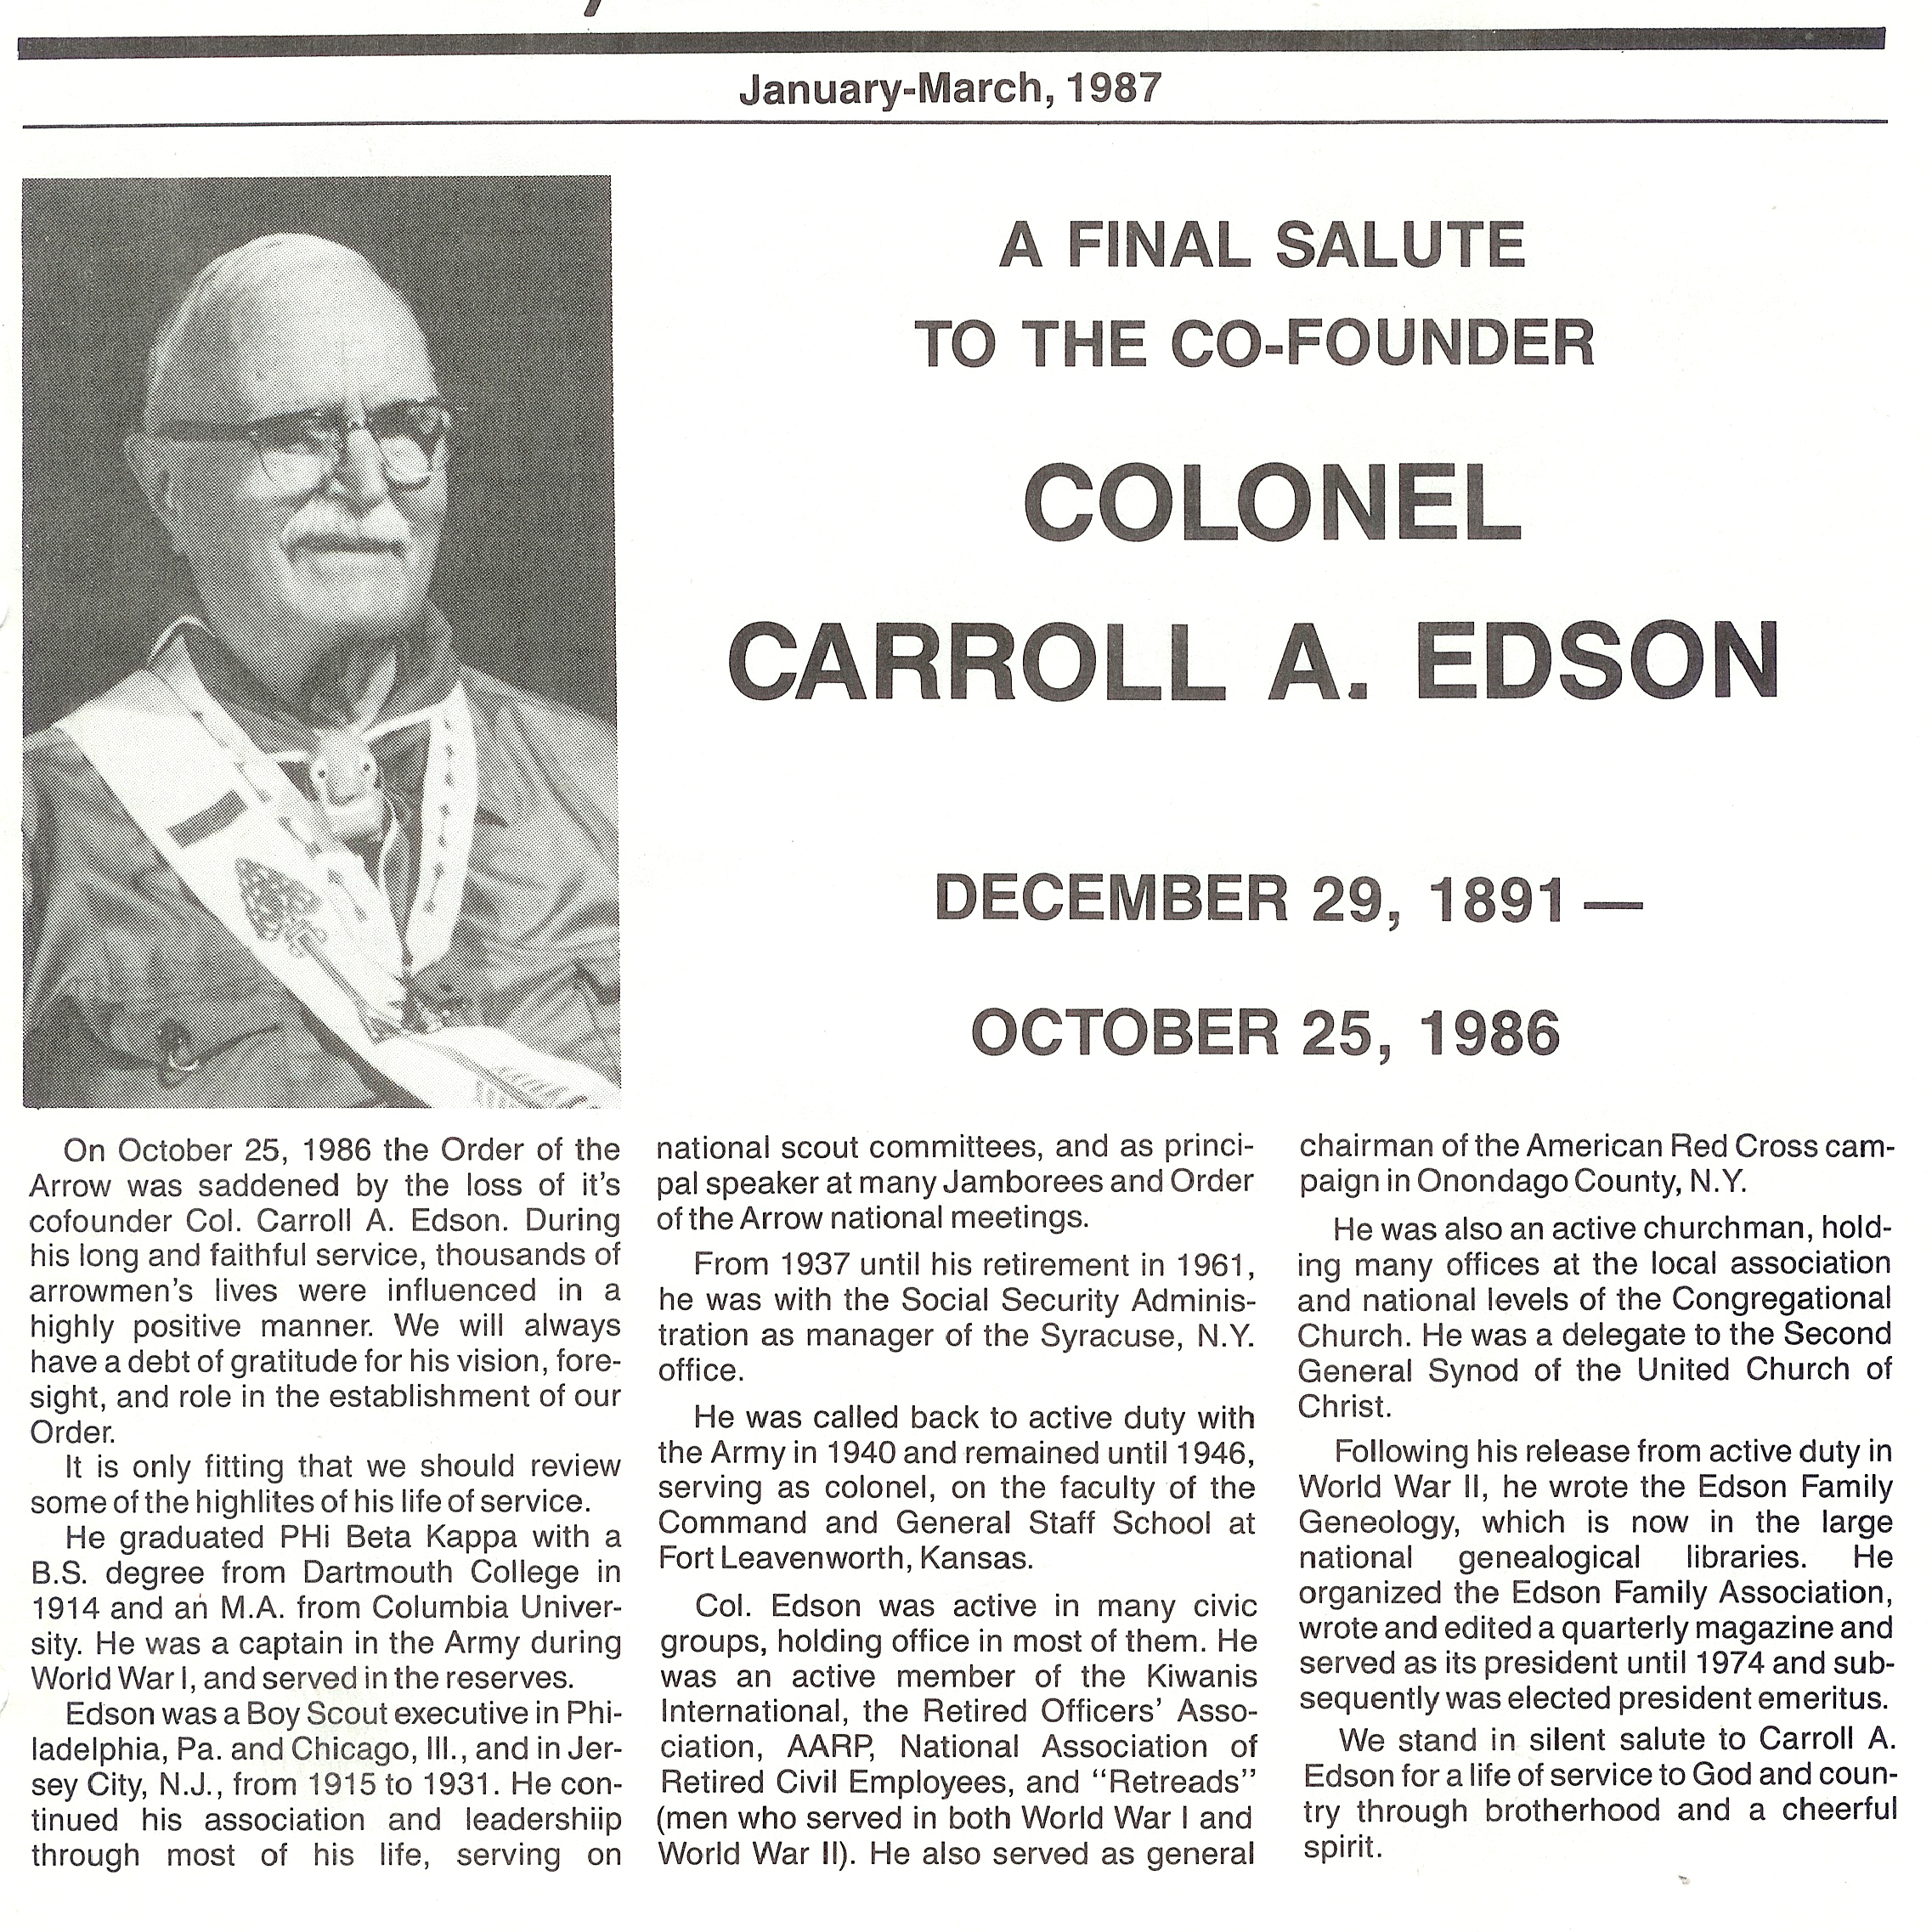 Article about Edson's death